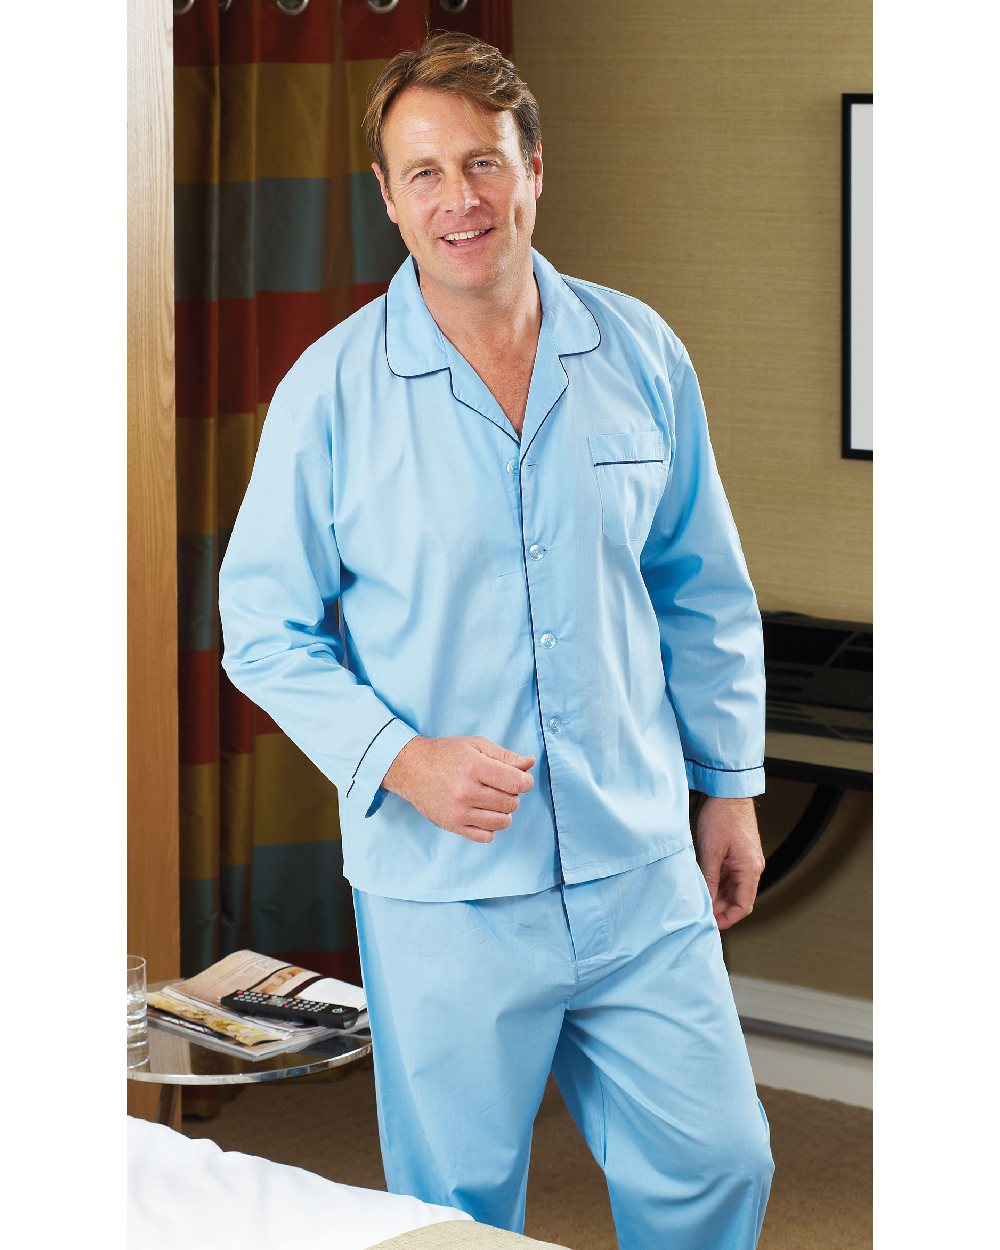 Mens Champion Paisley Brushed Cotton Pyjama Set Sizes S up to 3XL